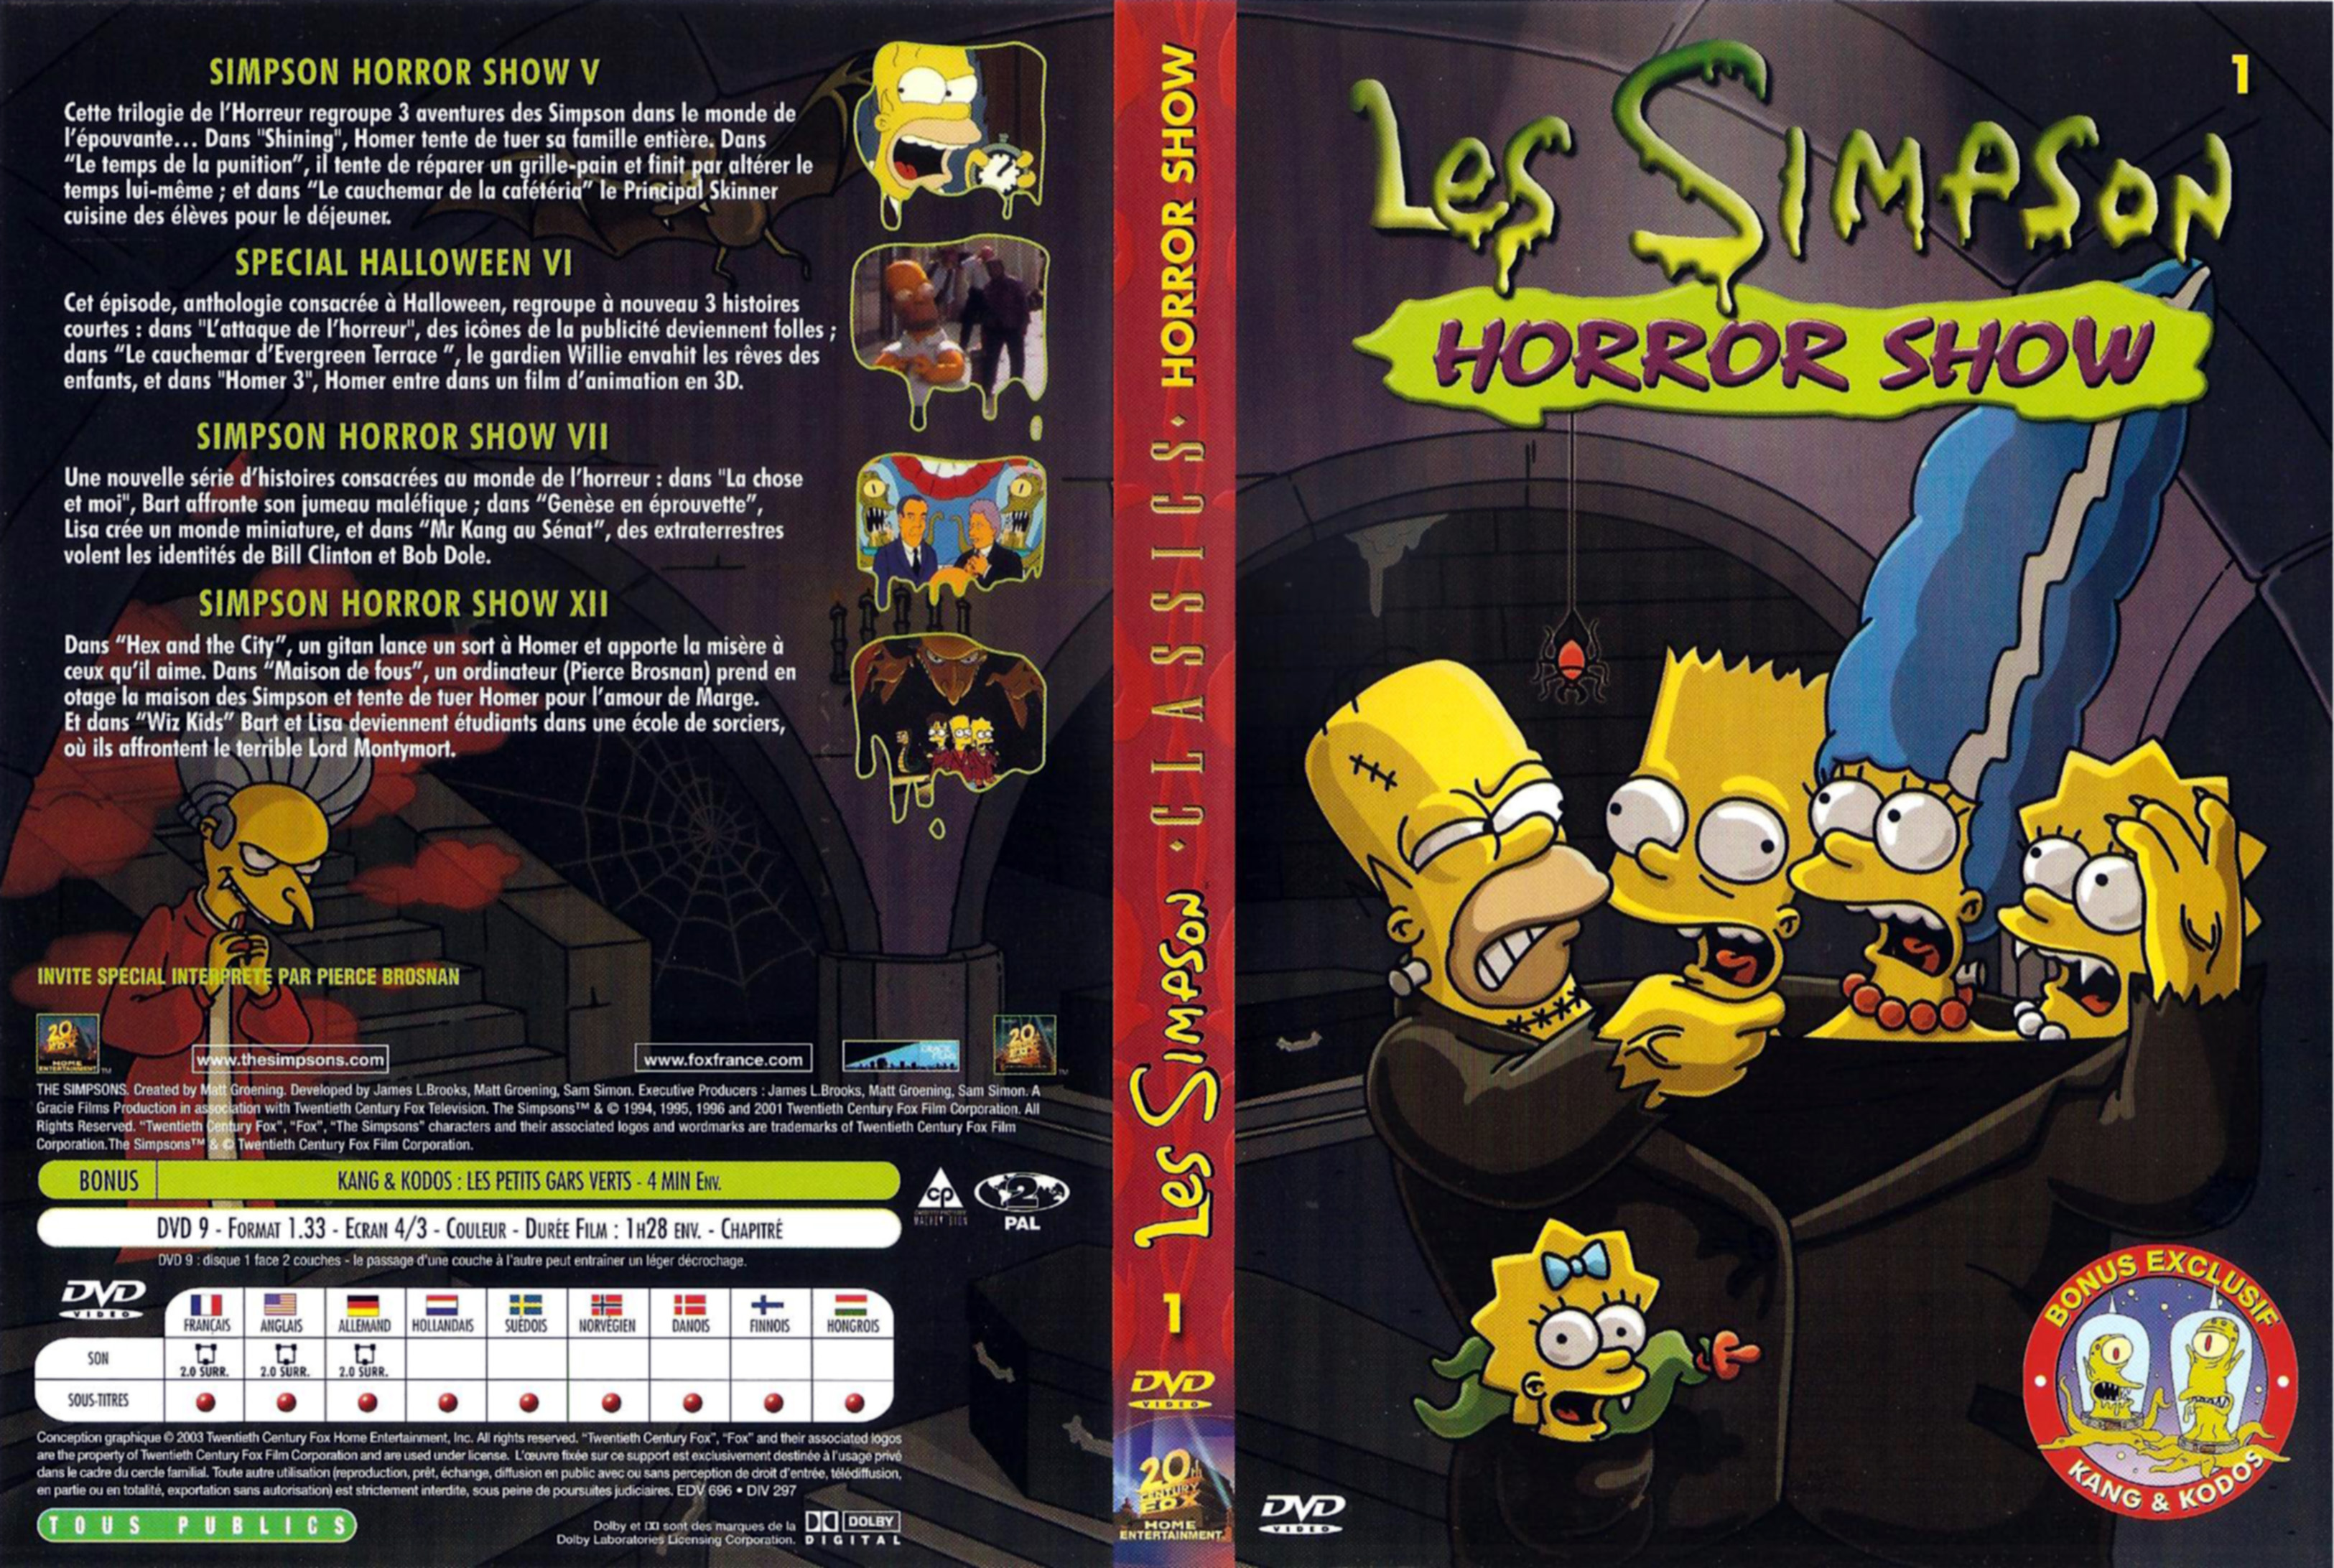 Jaquette DVD Les Simpson horror show v2